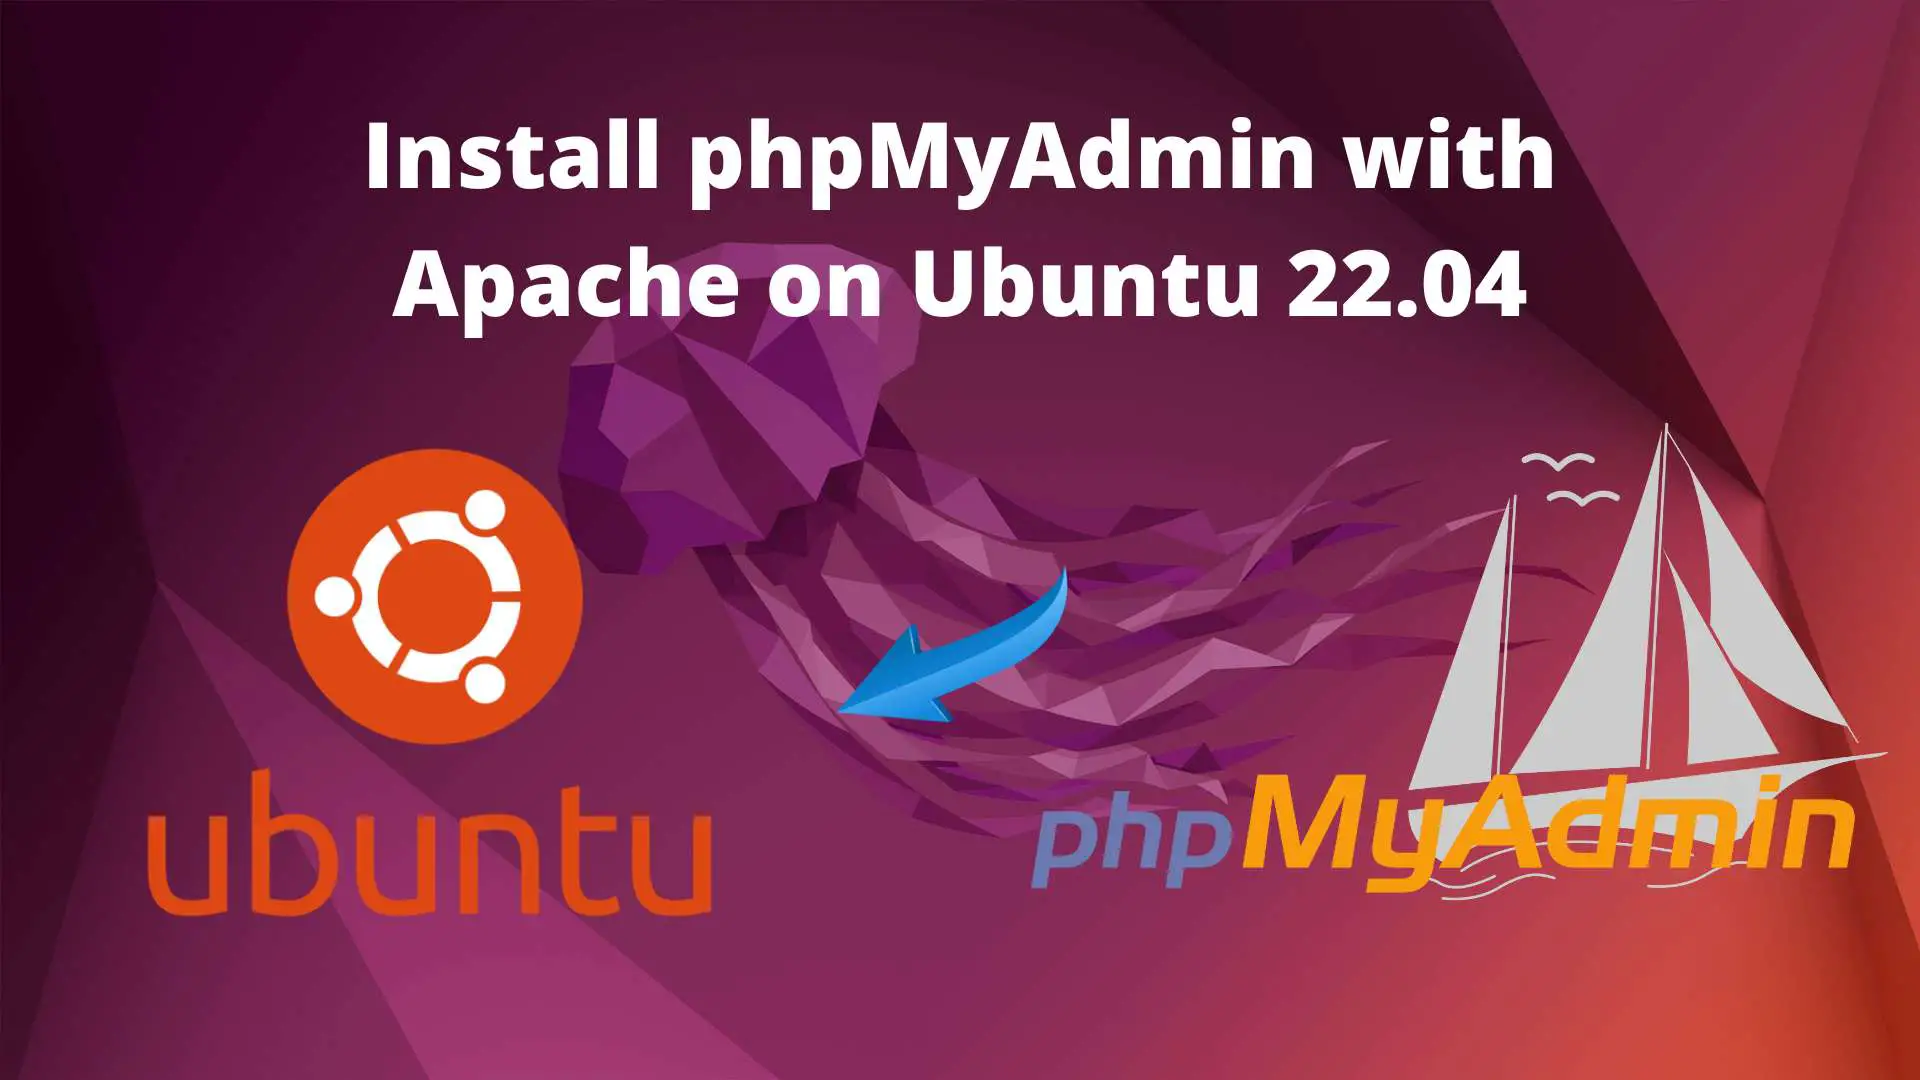 Install phpMyAdmin with Apache on Ubuntu 22.04